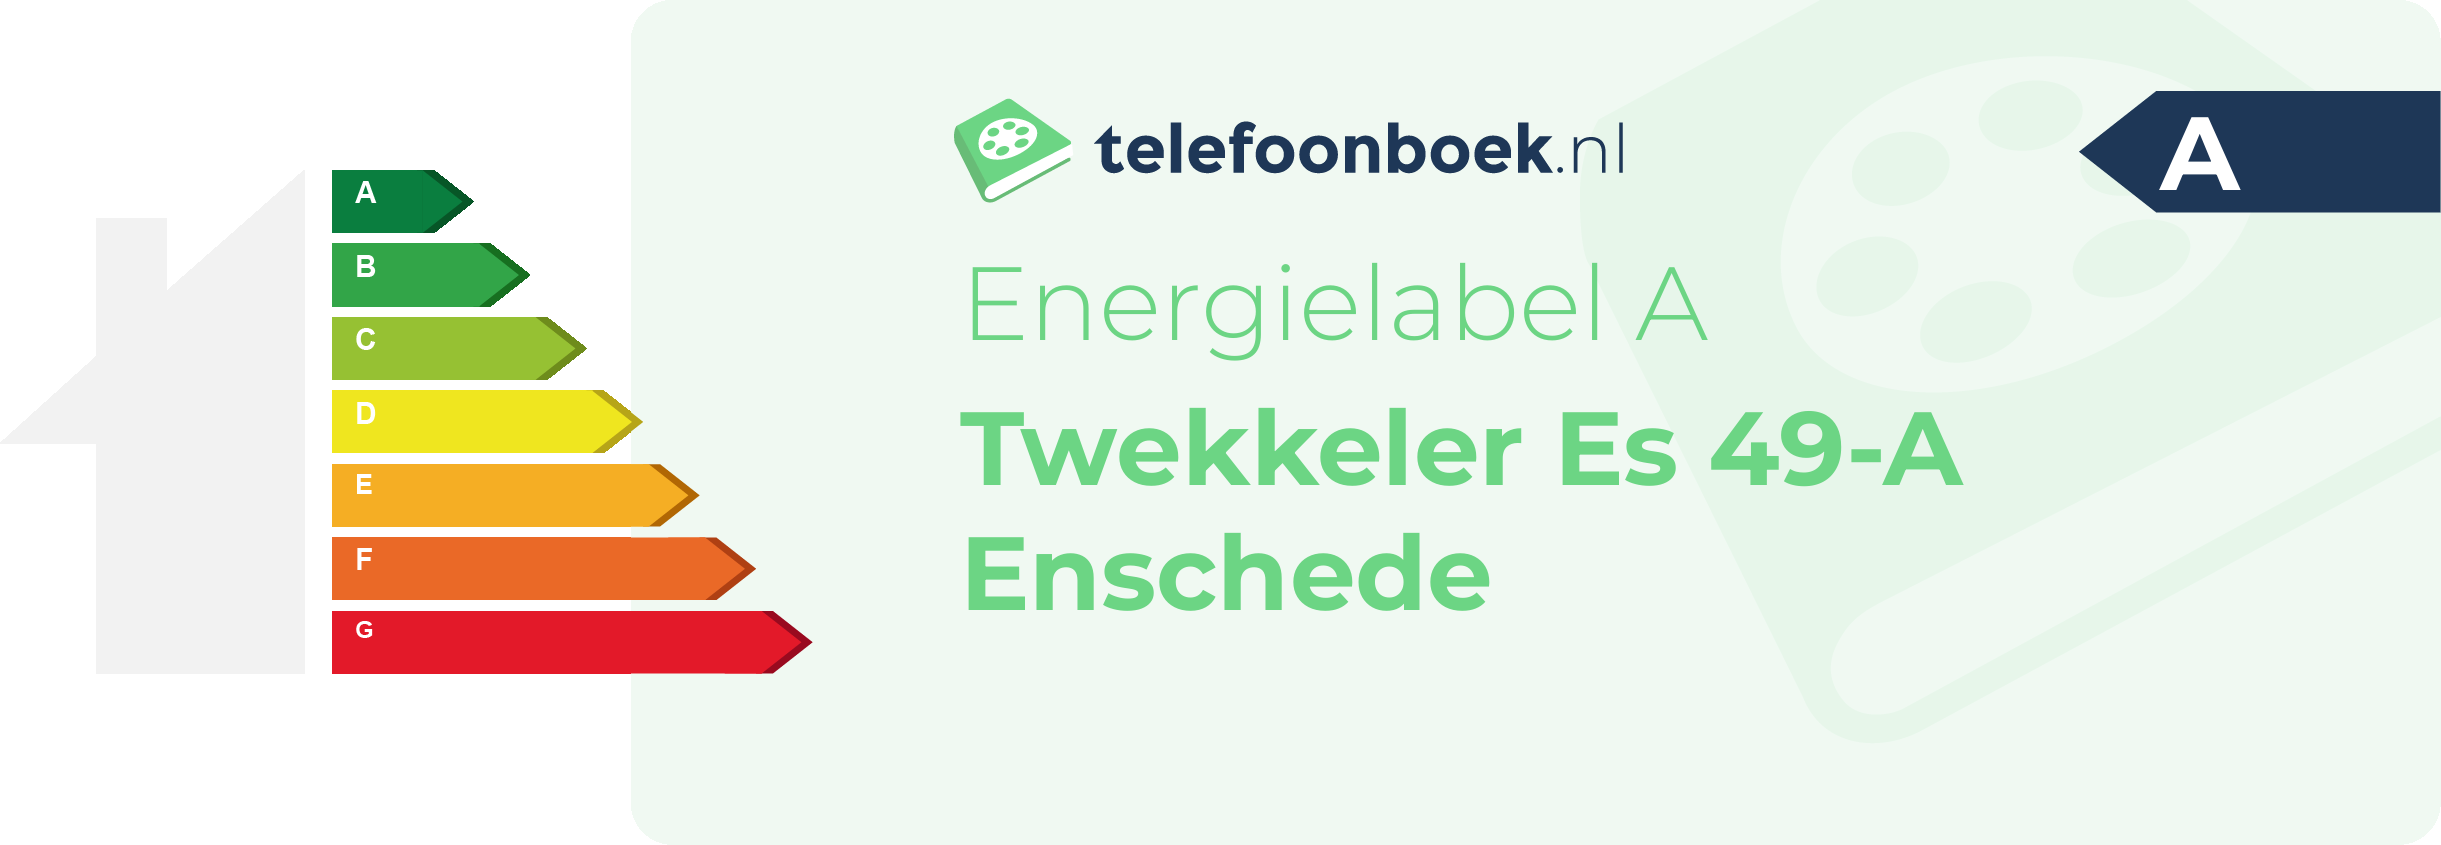 Energielabel Twekkeler Es 49-A Enschede